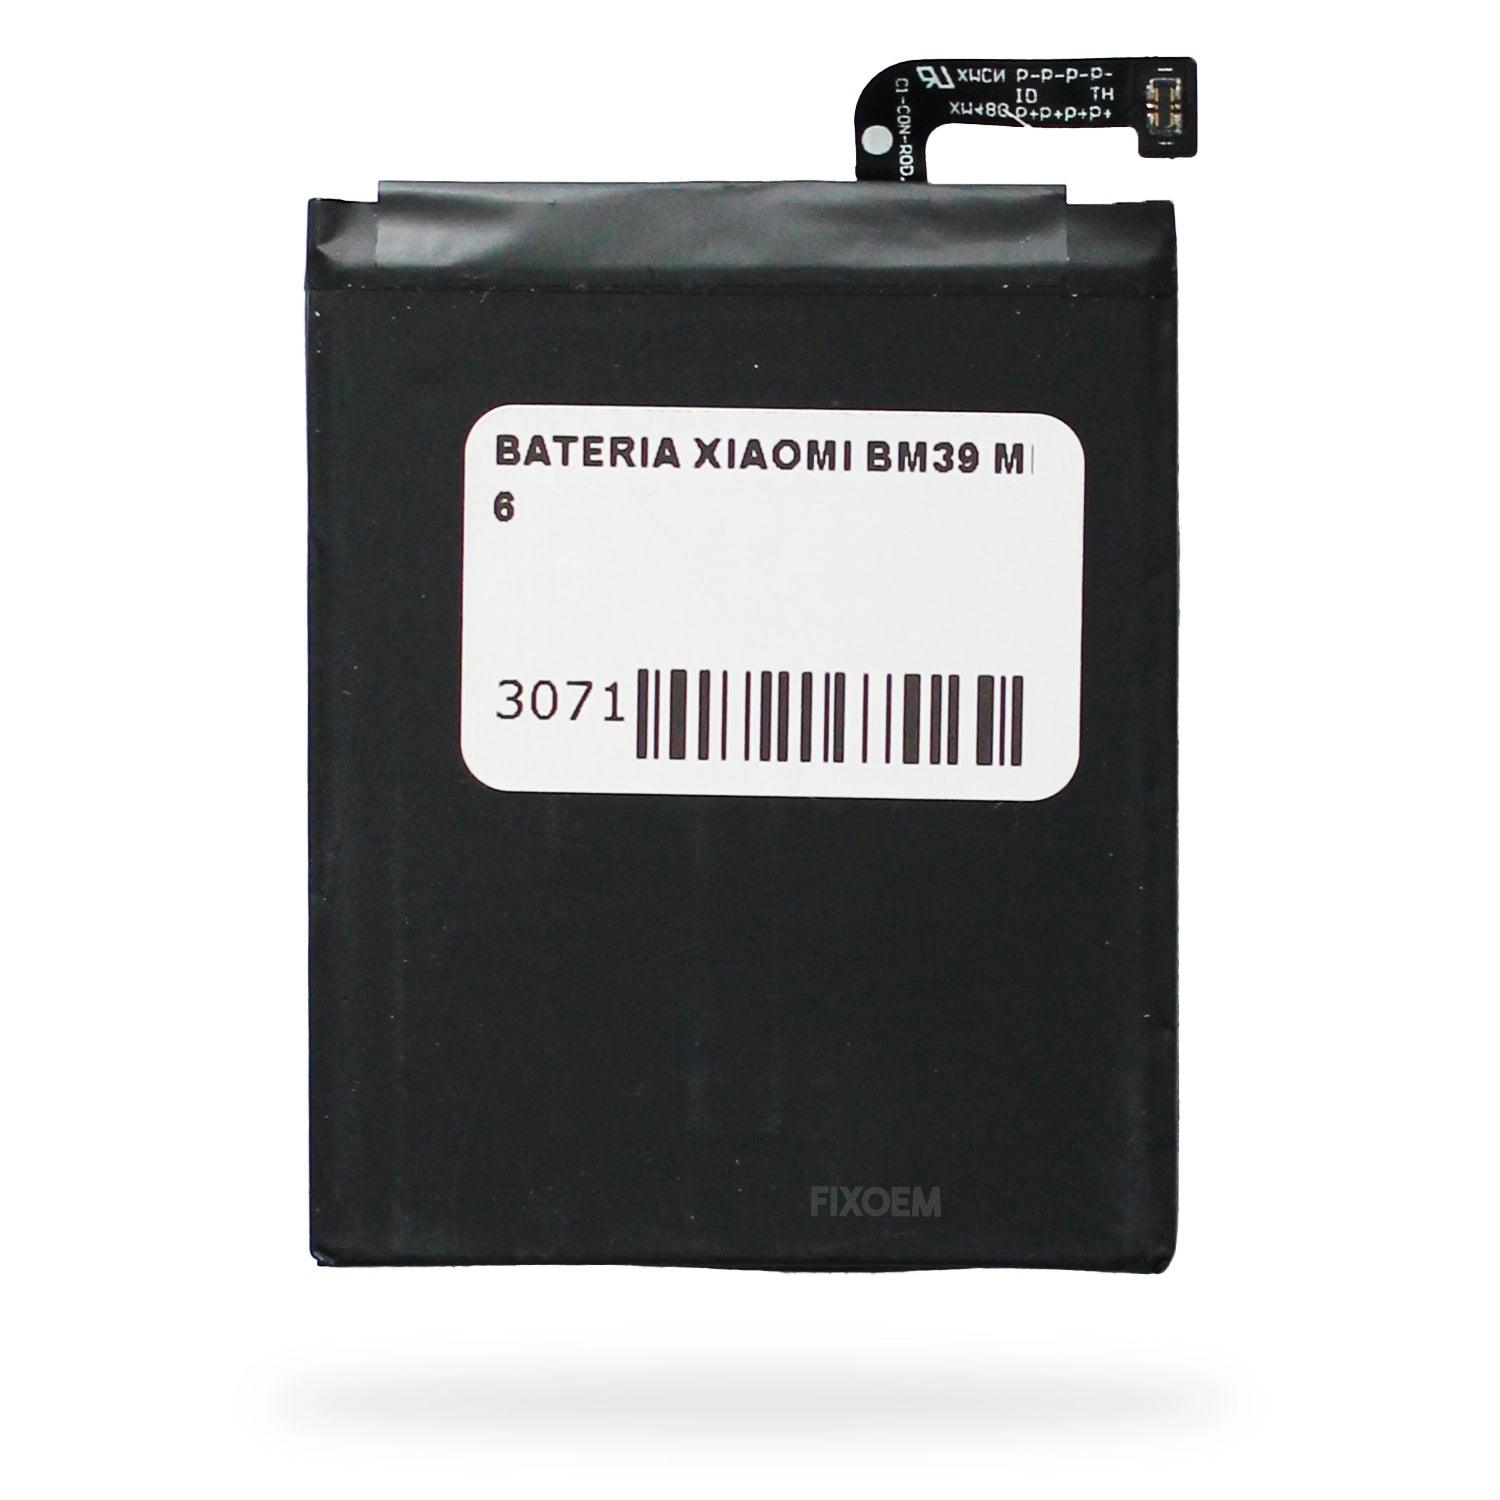 Bateria Xiaomi Mi 6 MCE16 Bm39 a solo $ 230.00 Refaccion y puestos celulares, refurbish y microelectronica.- FixOEM